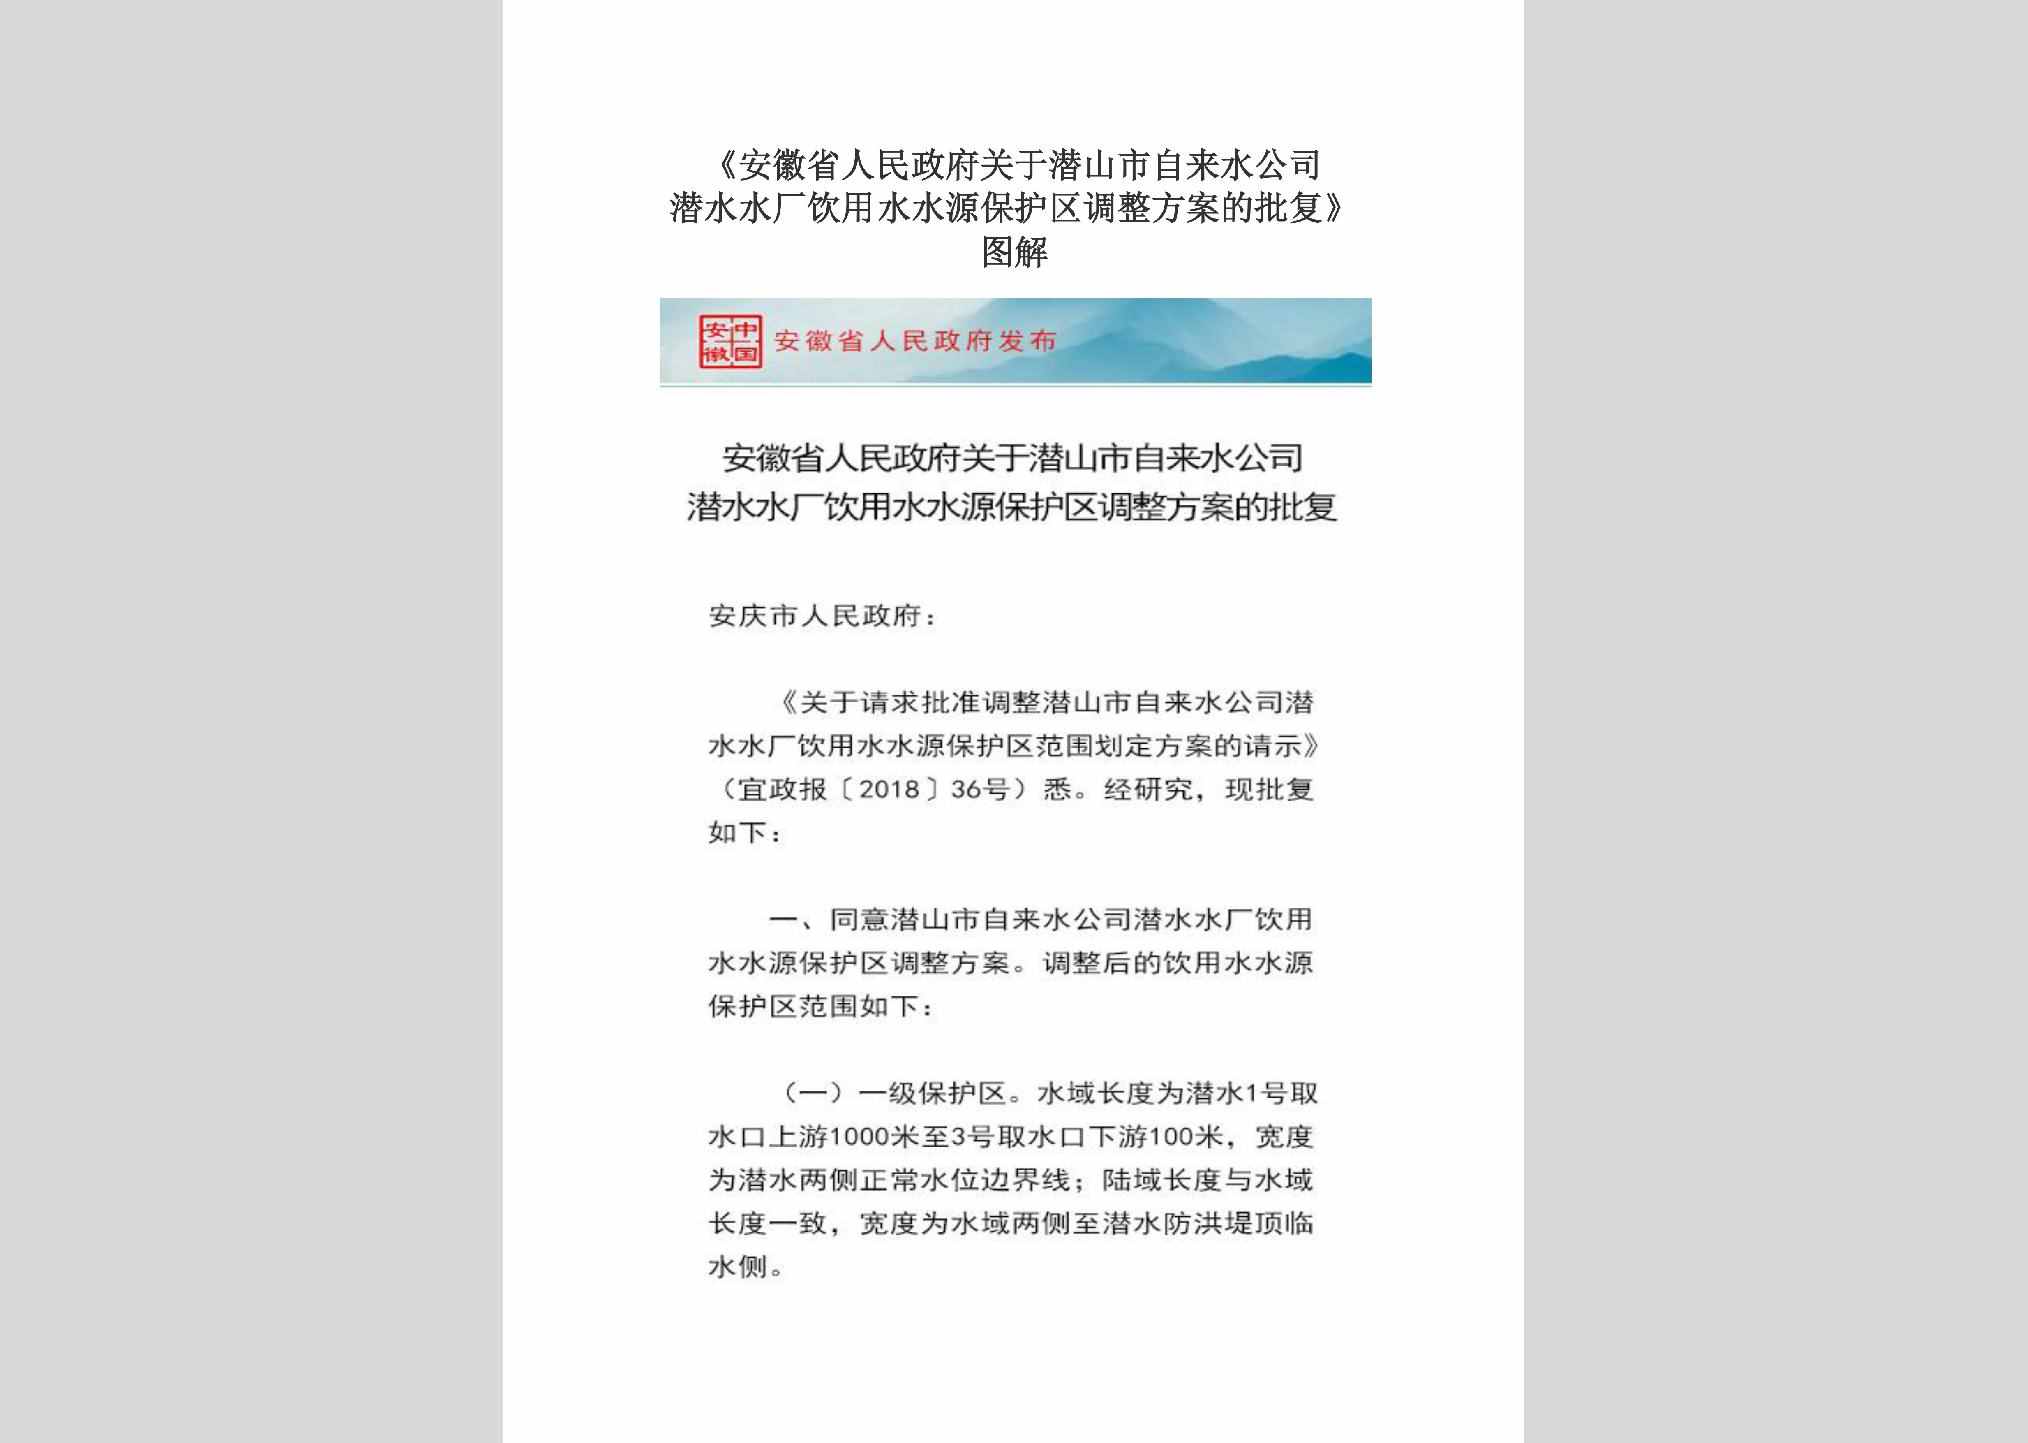 AH-QSSZLSGS-2018：《安徽省人民政府关于潜山市自来水公司潜水水厂饮用水水源保护区调整方案的批复》图解